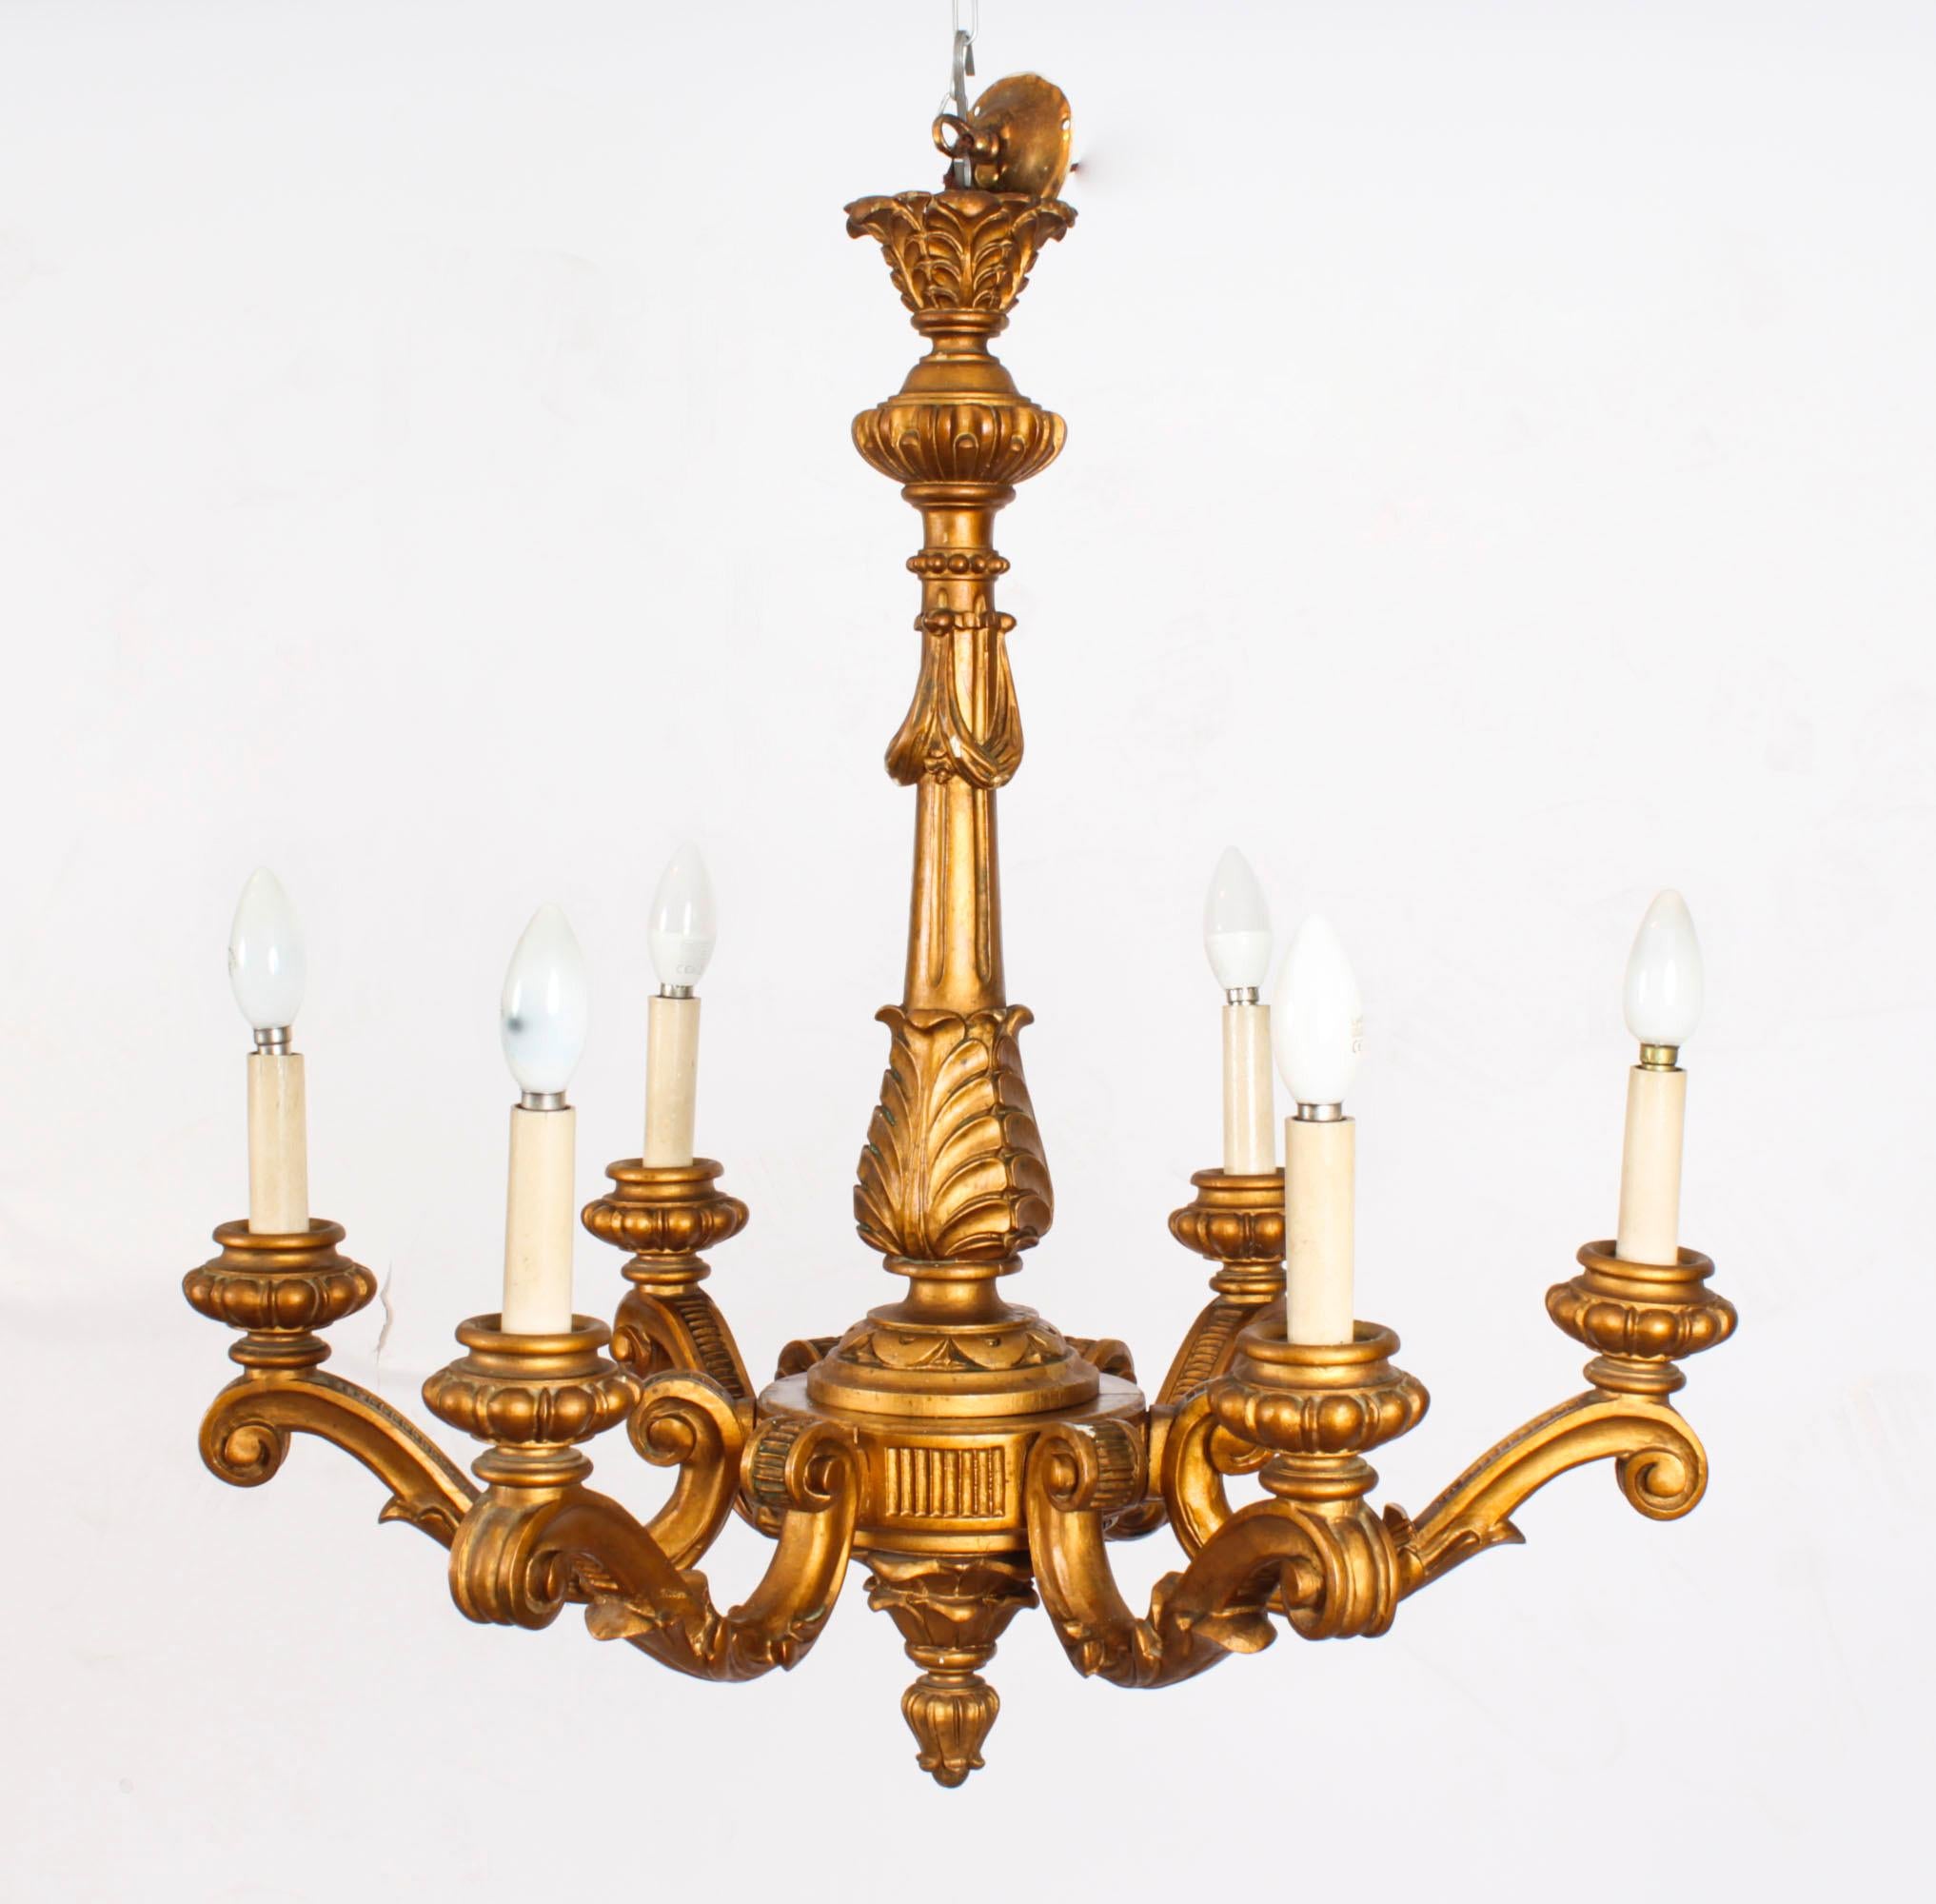 Dies ist ein wunderschönes Paar antiker italienischer Kronleuchter aus Goldholz mit sechs Lichtern, circa aus dem Jahr 1920.

Jeder sechsarmige Kronleuchter aus vergoldetem Holz ist kunstvoll im Rokoko-Stil geschnitzt.

Diese Chandeleirs sehen mit